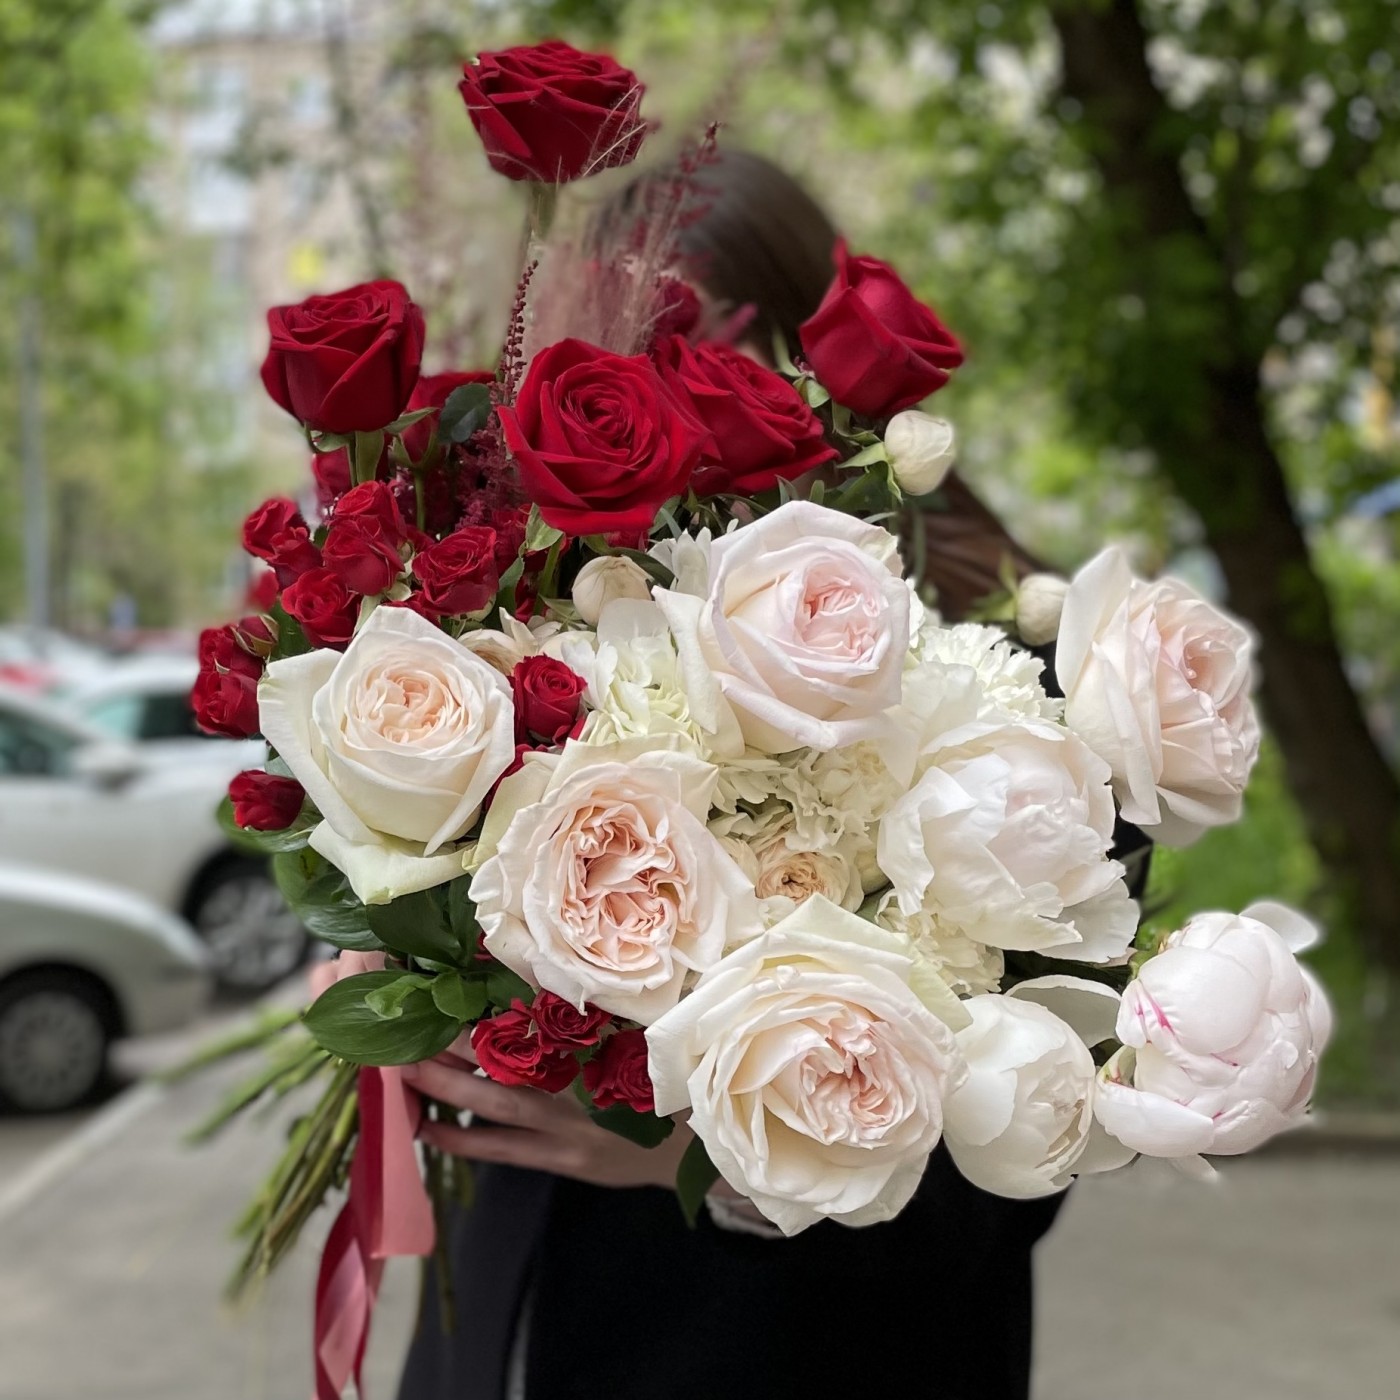 Шикарные пионы с розами на День влюбленных 14 февраля